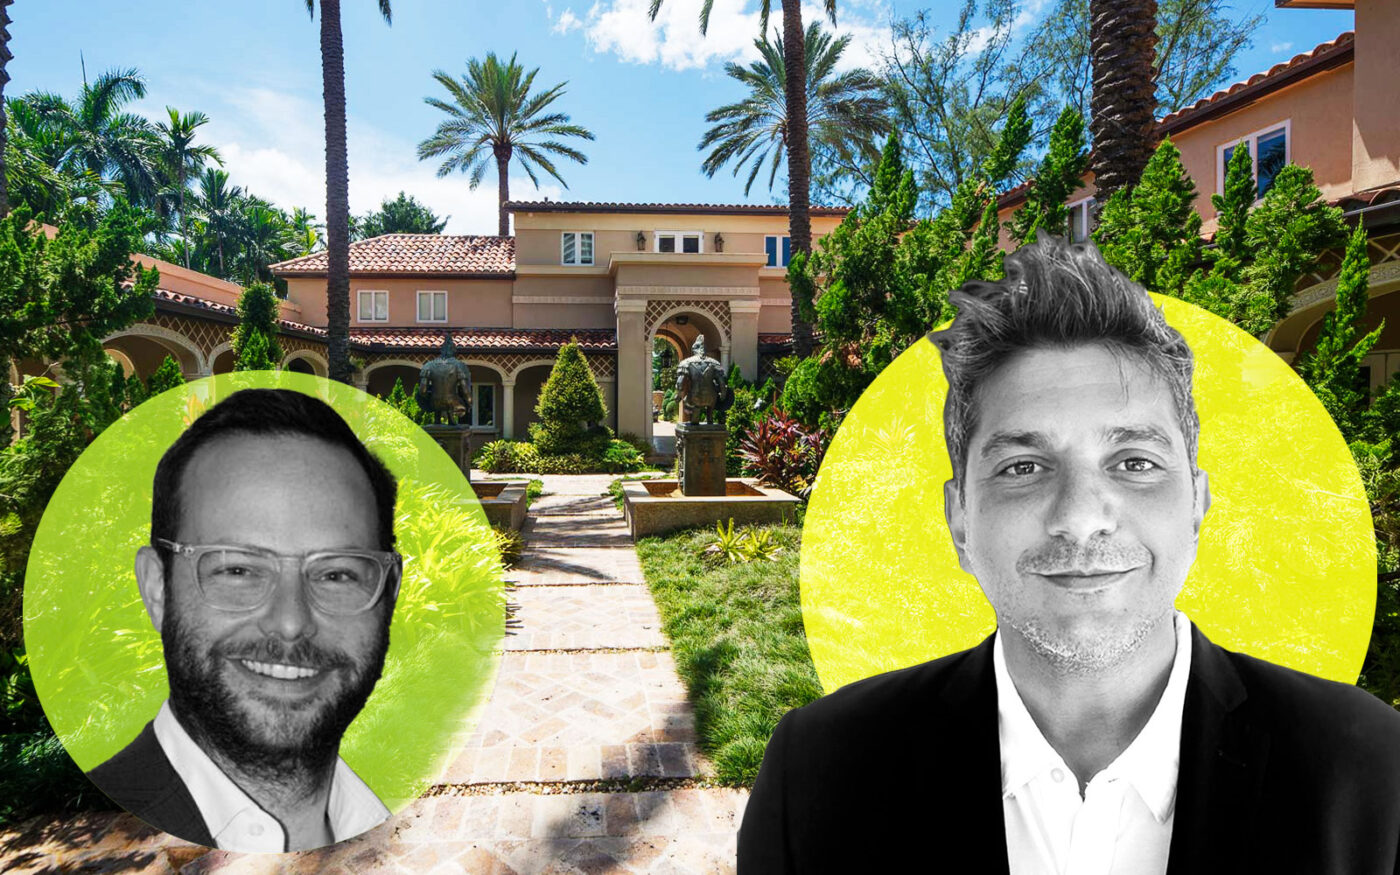 Daniel Gryfe Sells Miami Beach Mansion for $18M